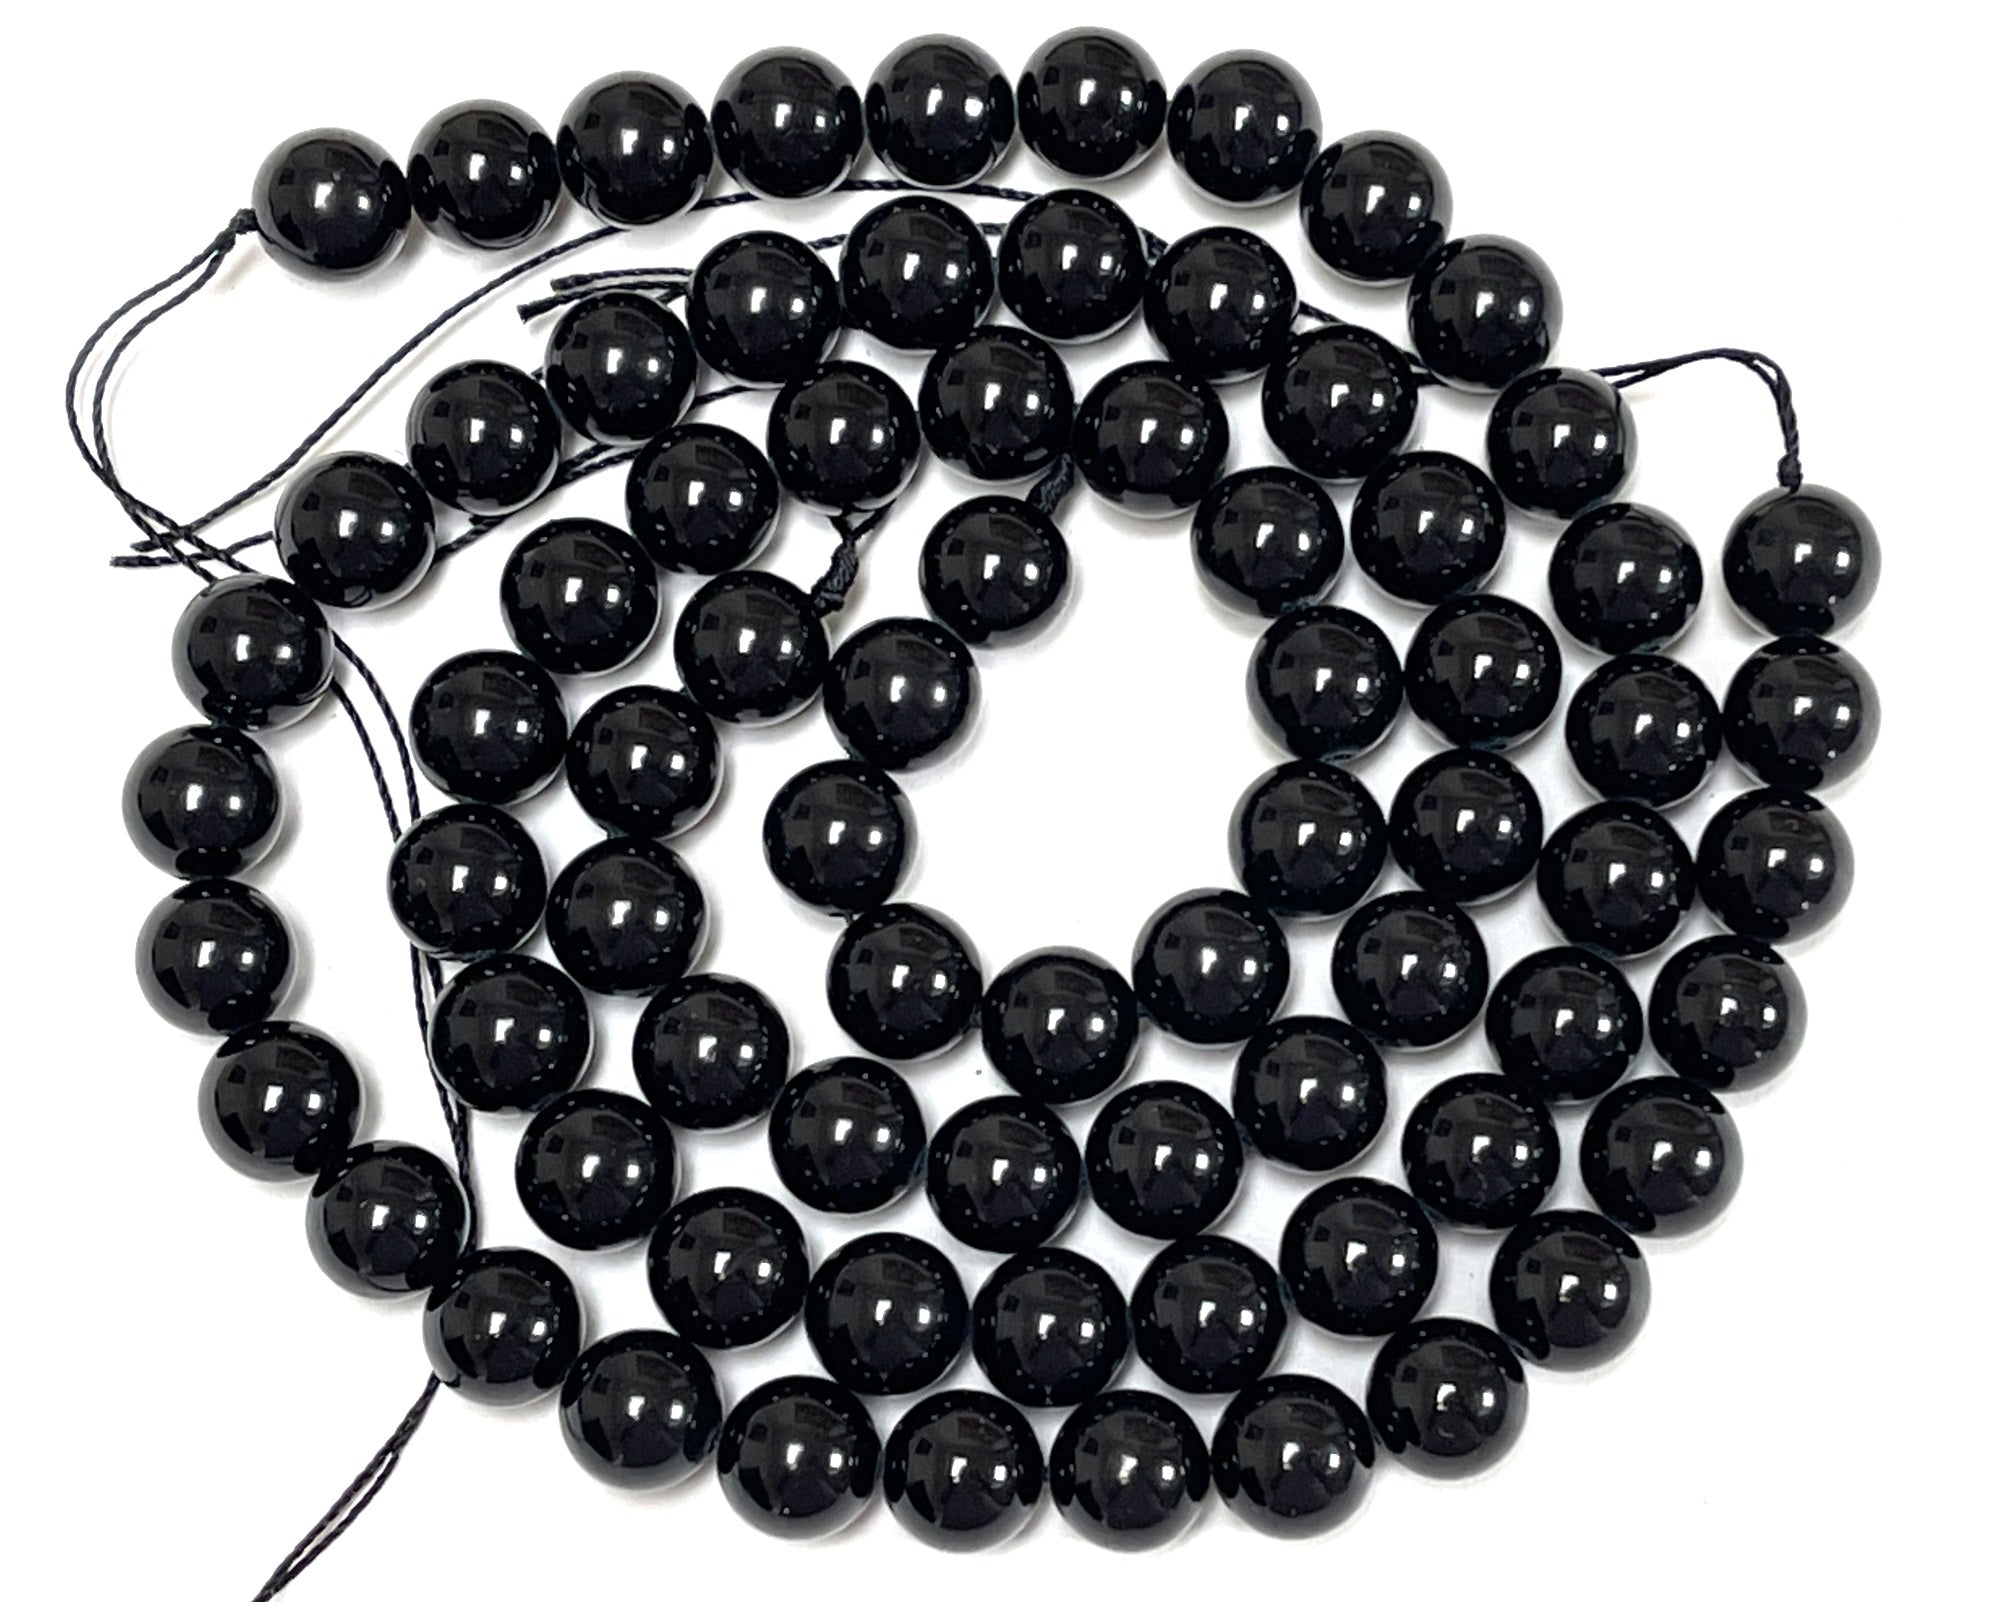 Black Tourmaline 10mm round natural gemstone beads 15" strand - Oz Beads 